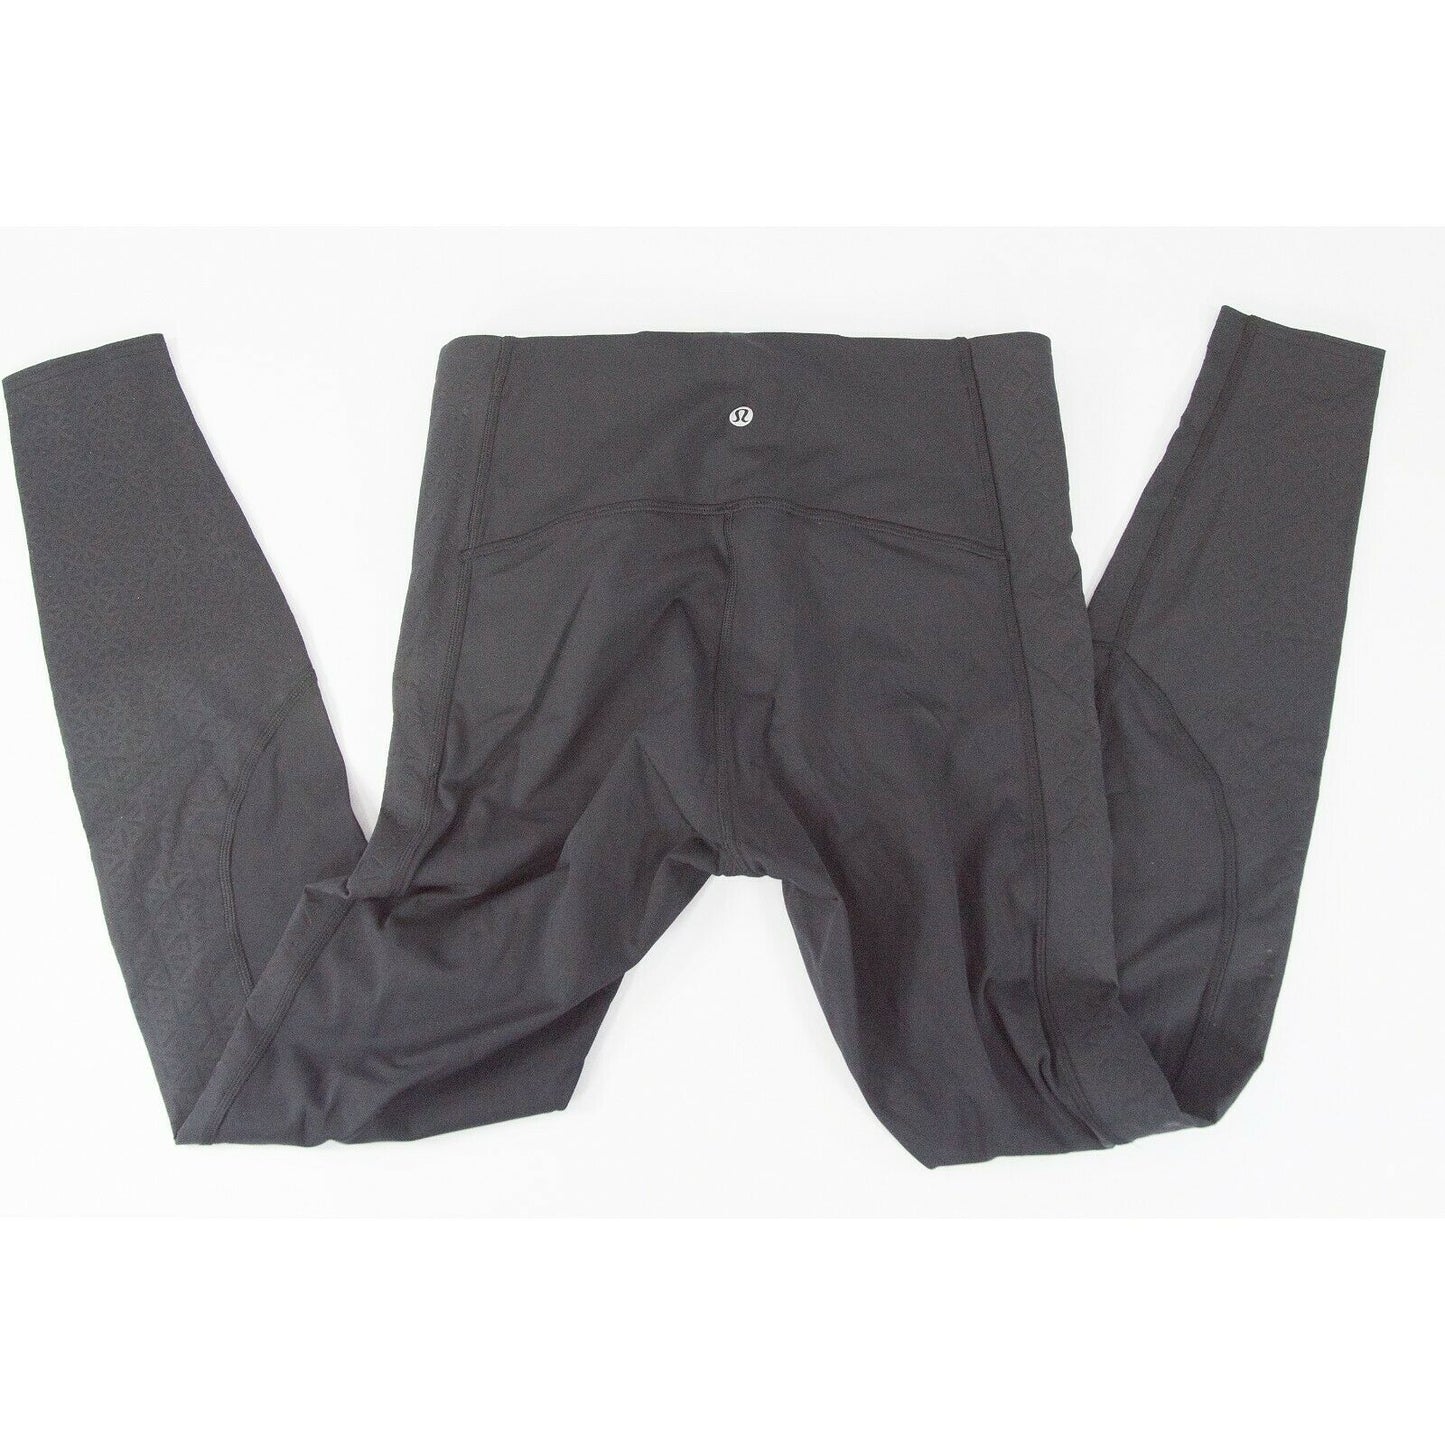 Lululemon Black Floral Mesh Bottom Thick tight leggings NWOT Size 8 C9